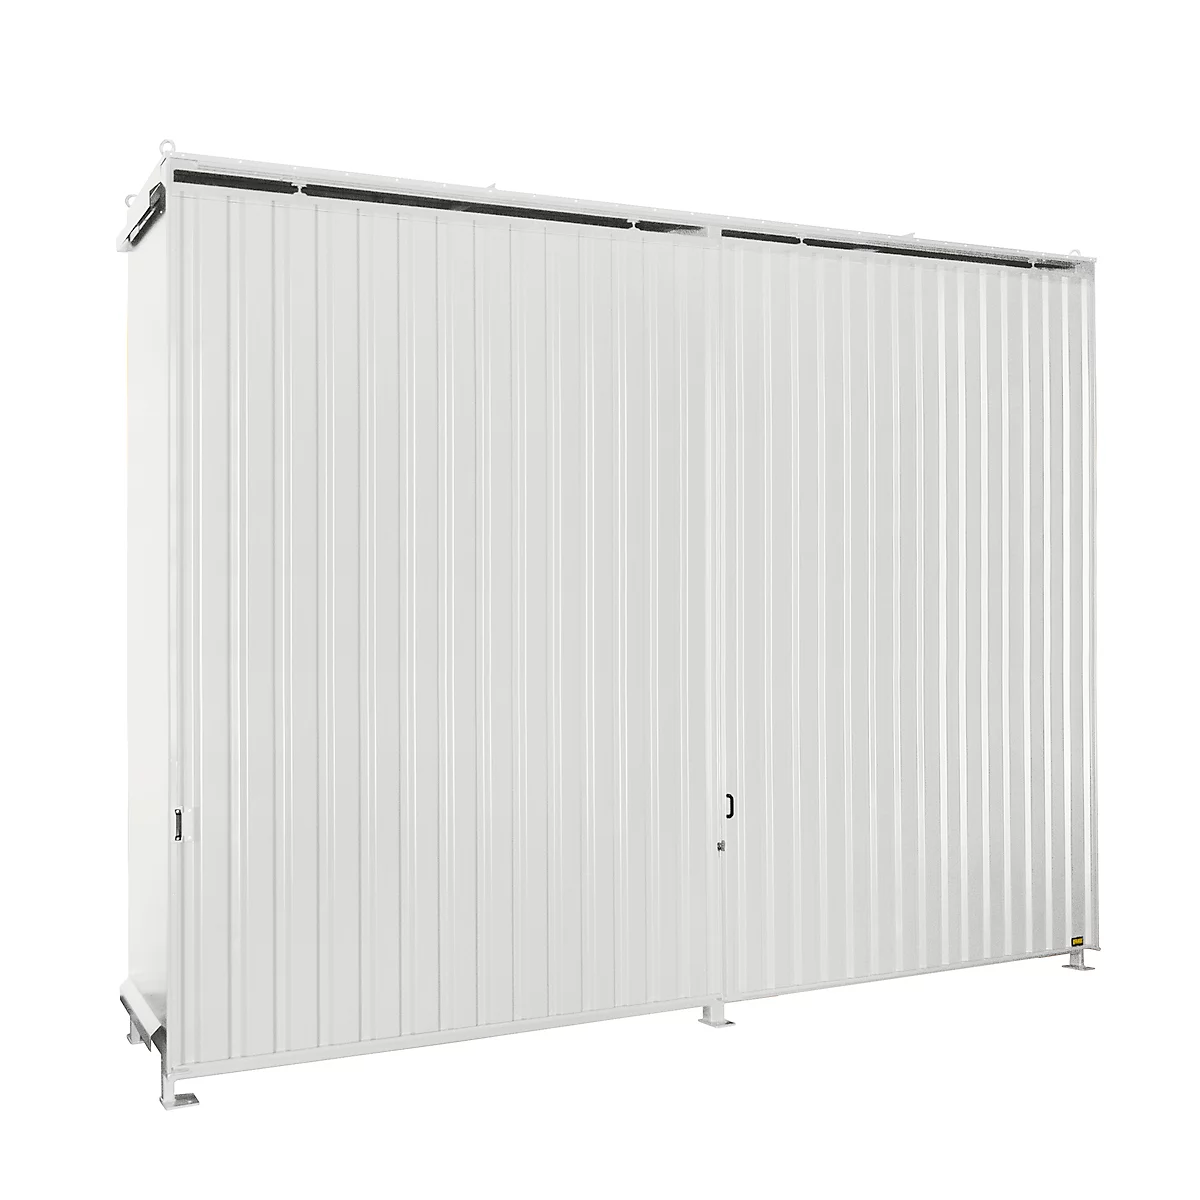 Contenedor de estantes BAUER CEN 59-3, acero, puerta corredera, ancho 6540 x fondo 1600 x alto 4415 mm, blanco